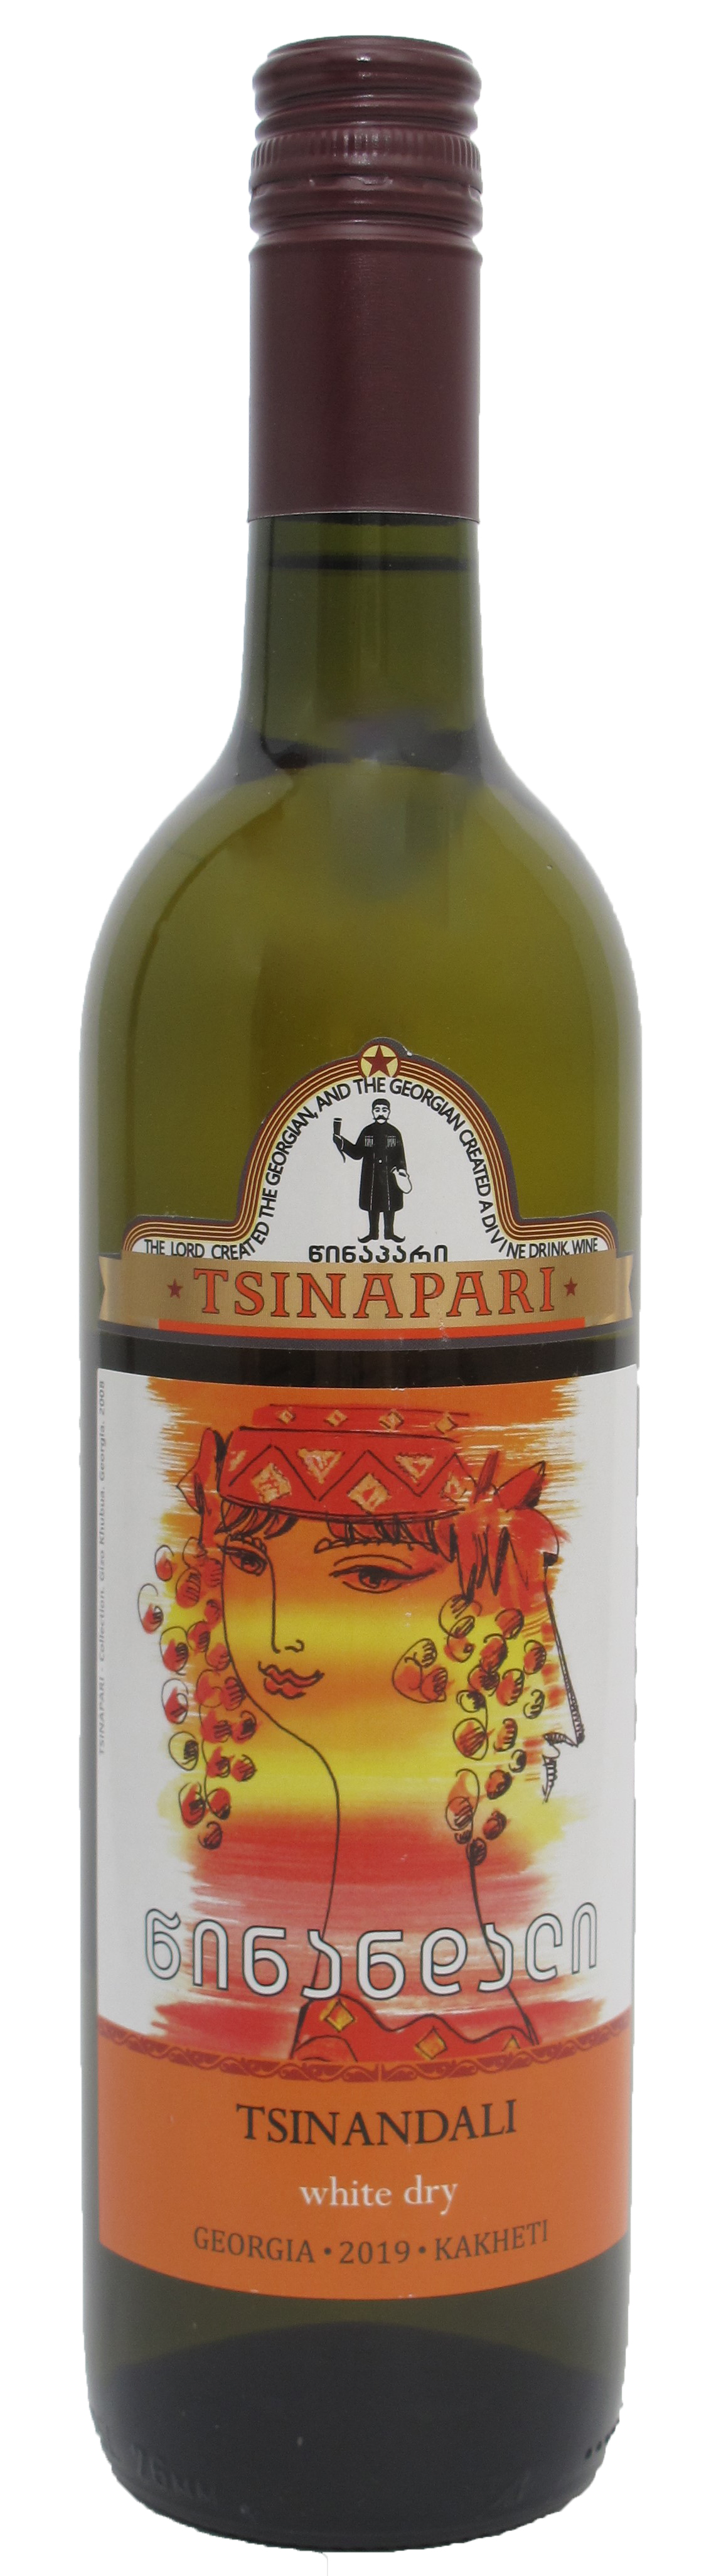 TSINANDALI - Georgischer Wein - Amphorenwein